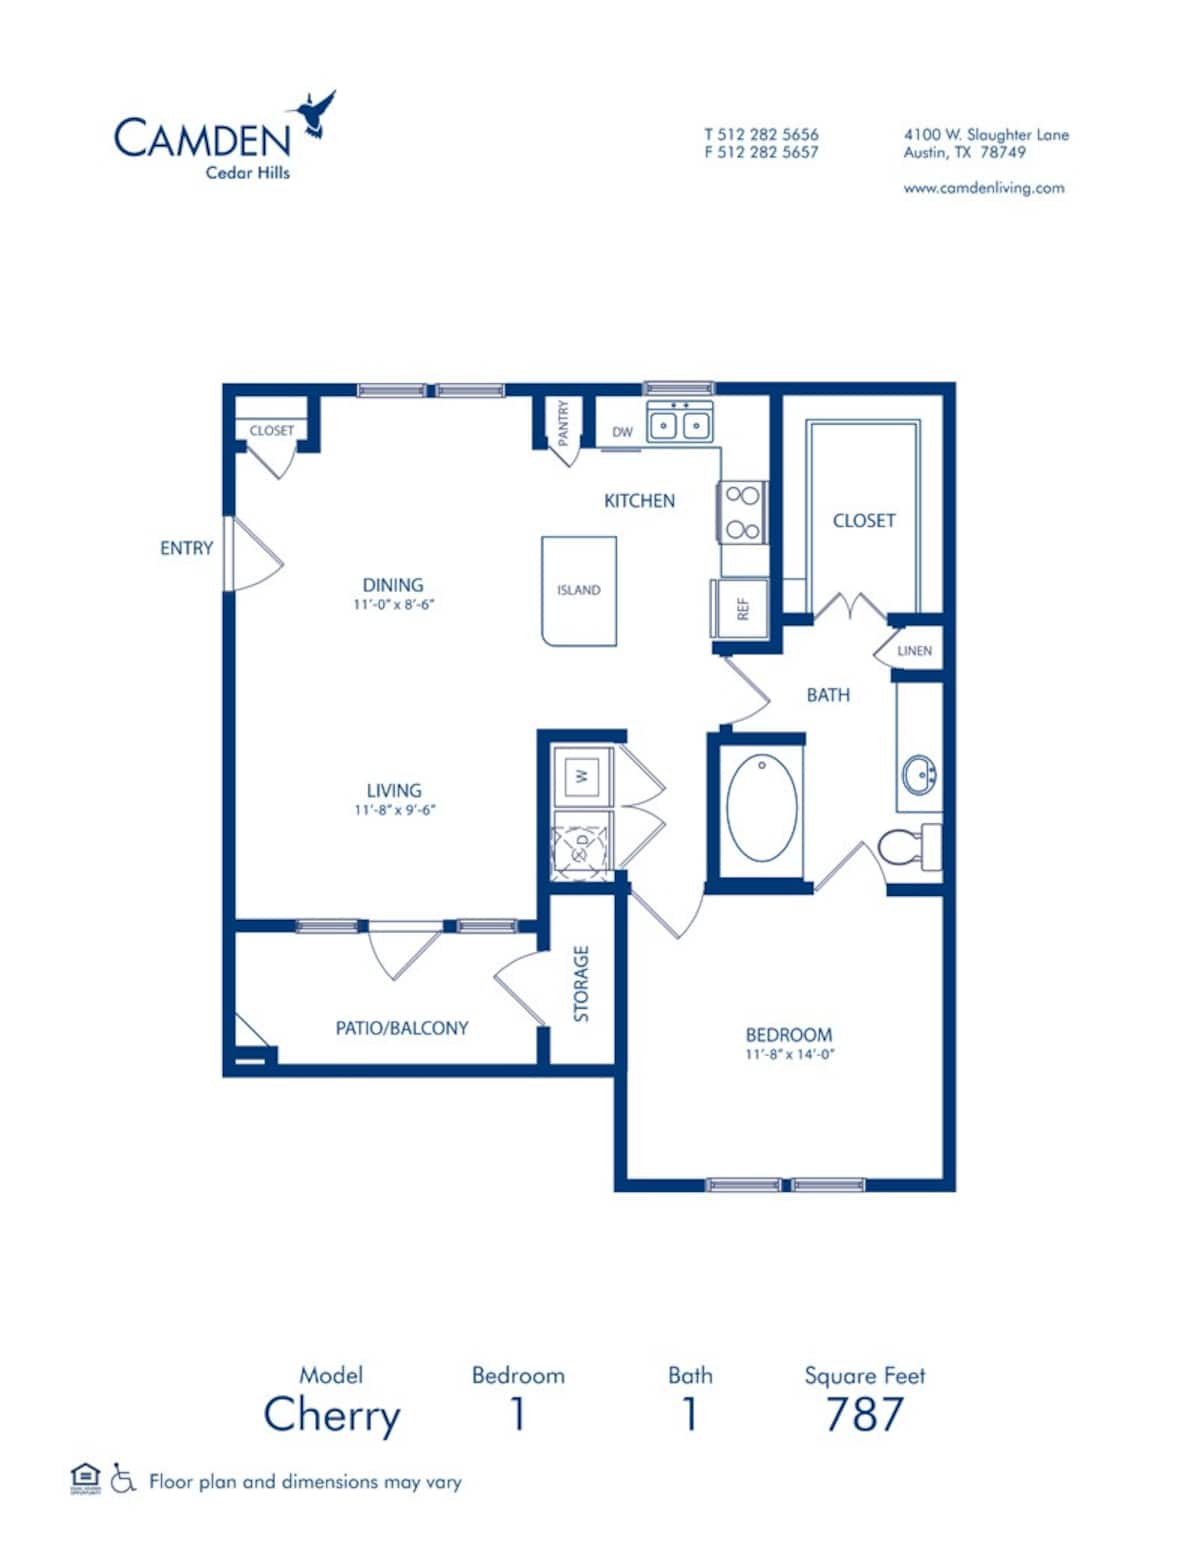 Floorplan diagram for Cherry, showing 1 bedroom